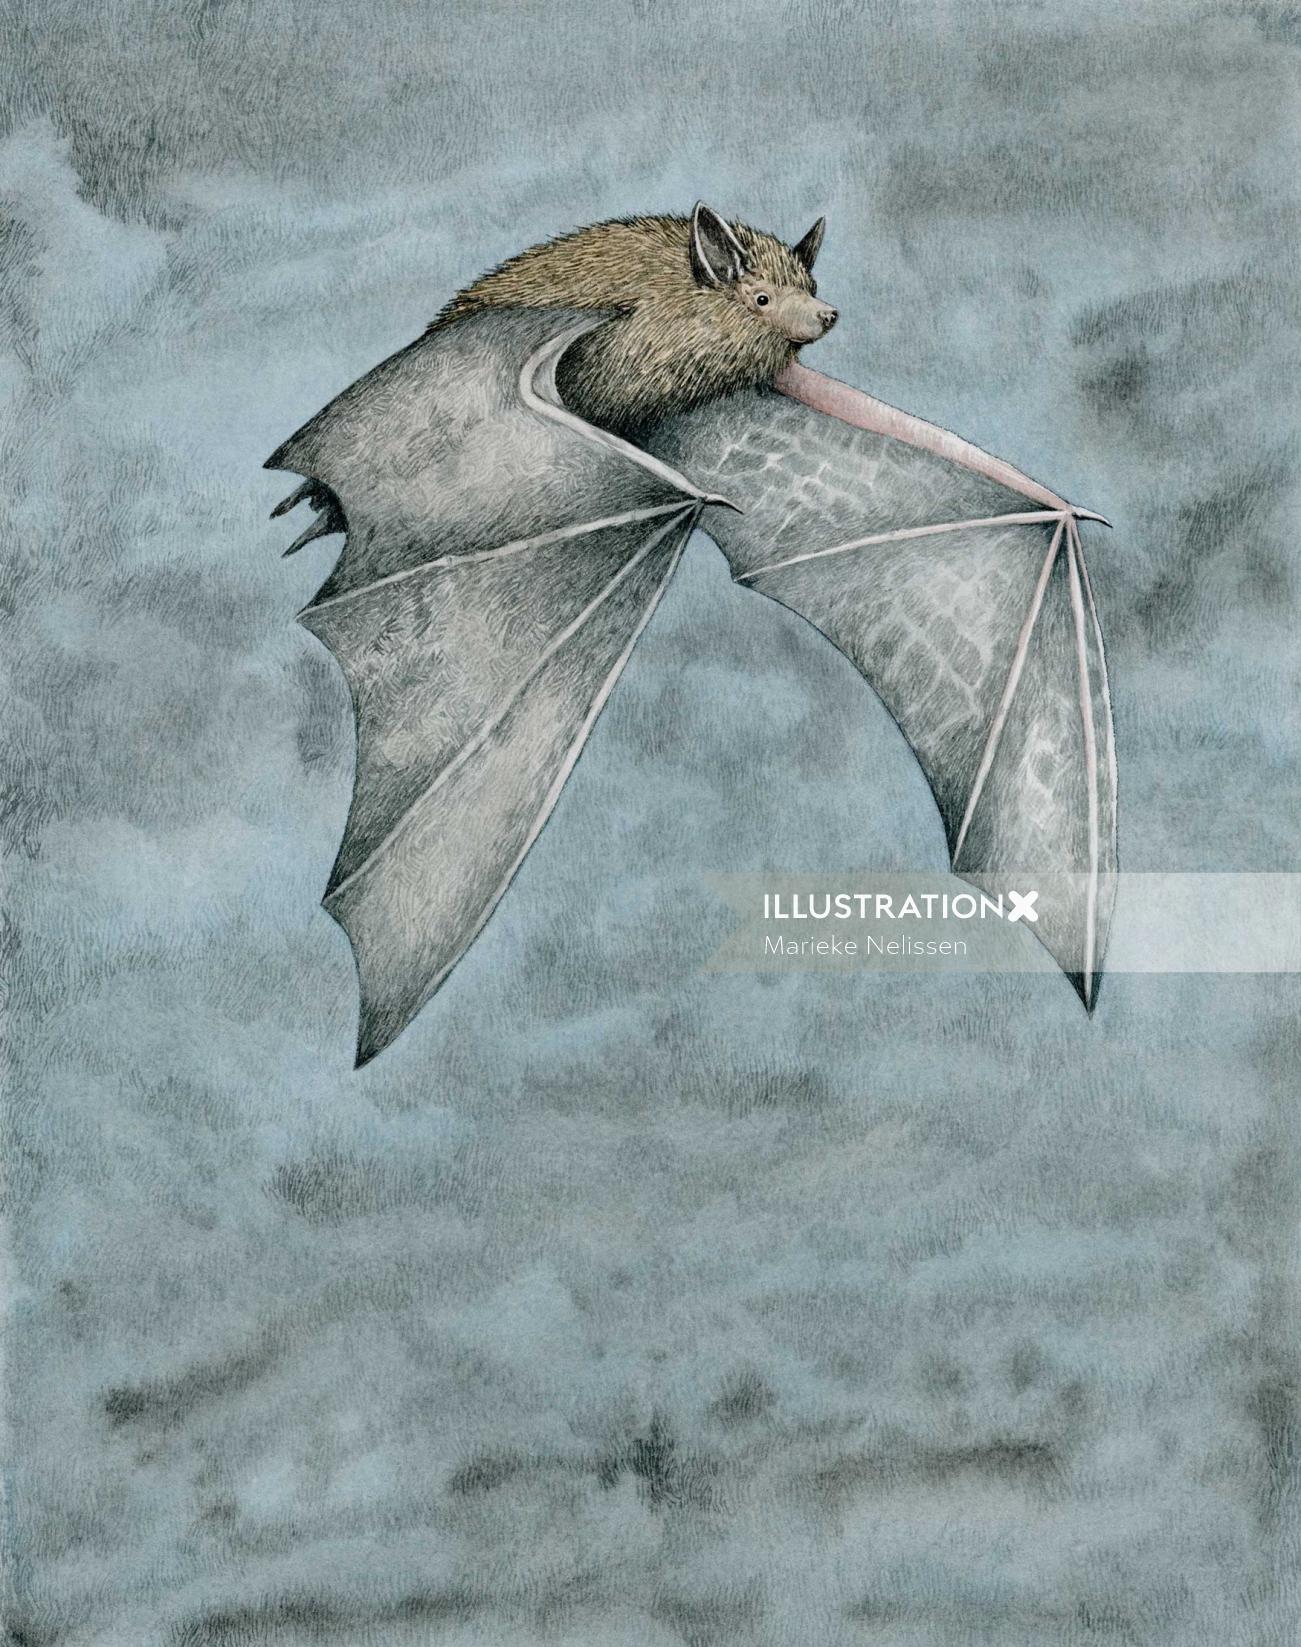 Morcego-anão voando à noite